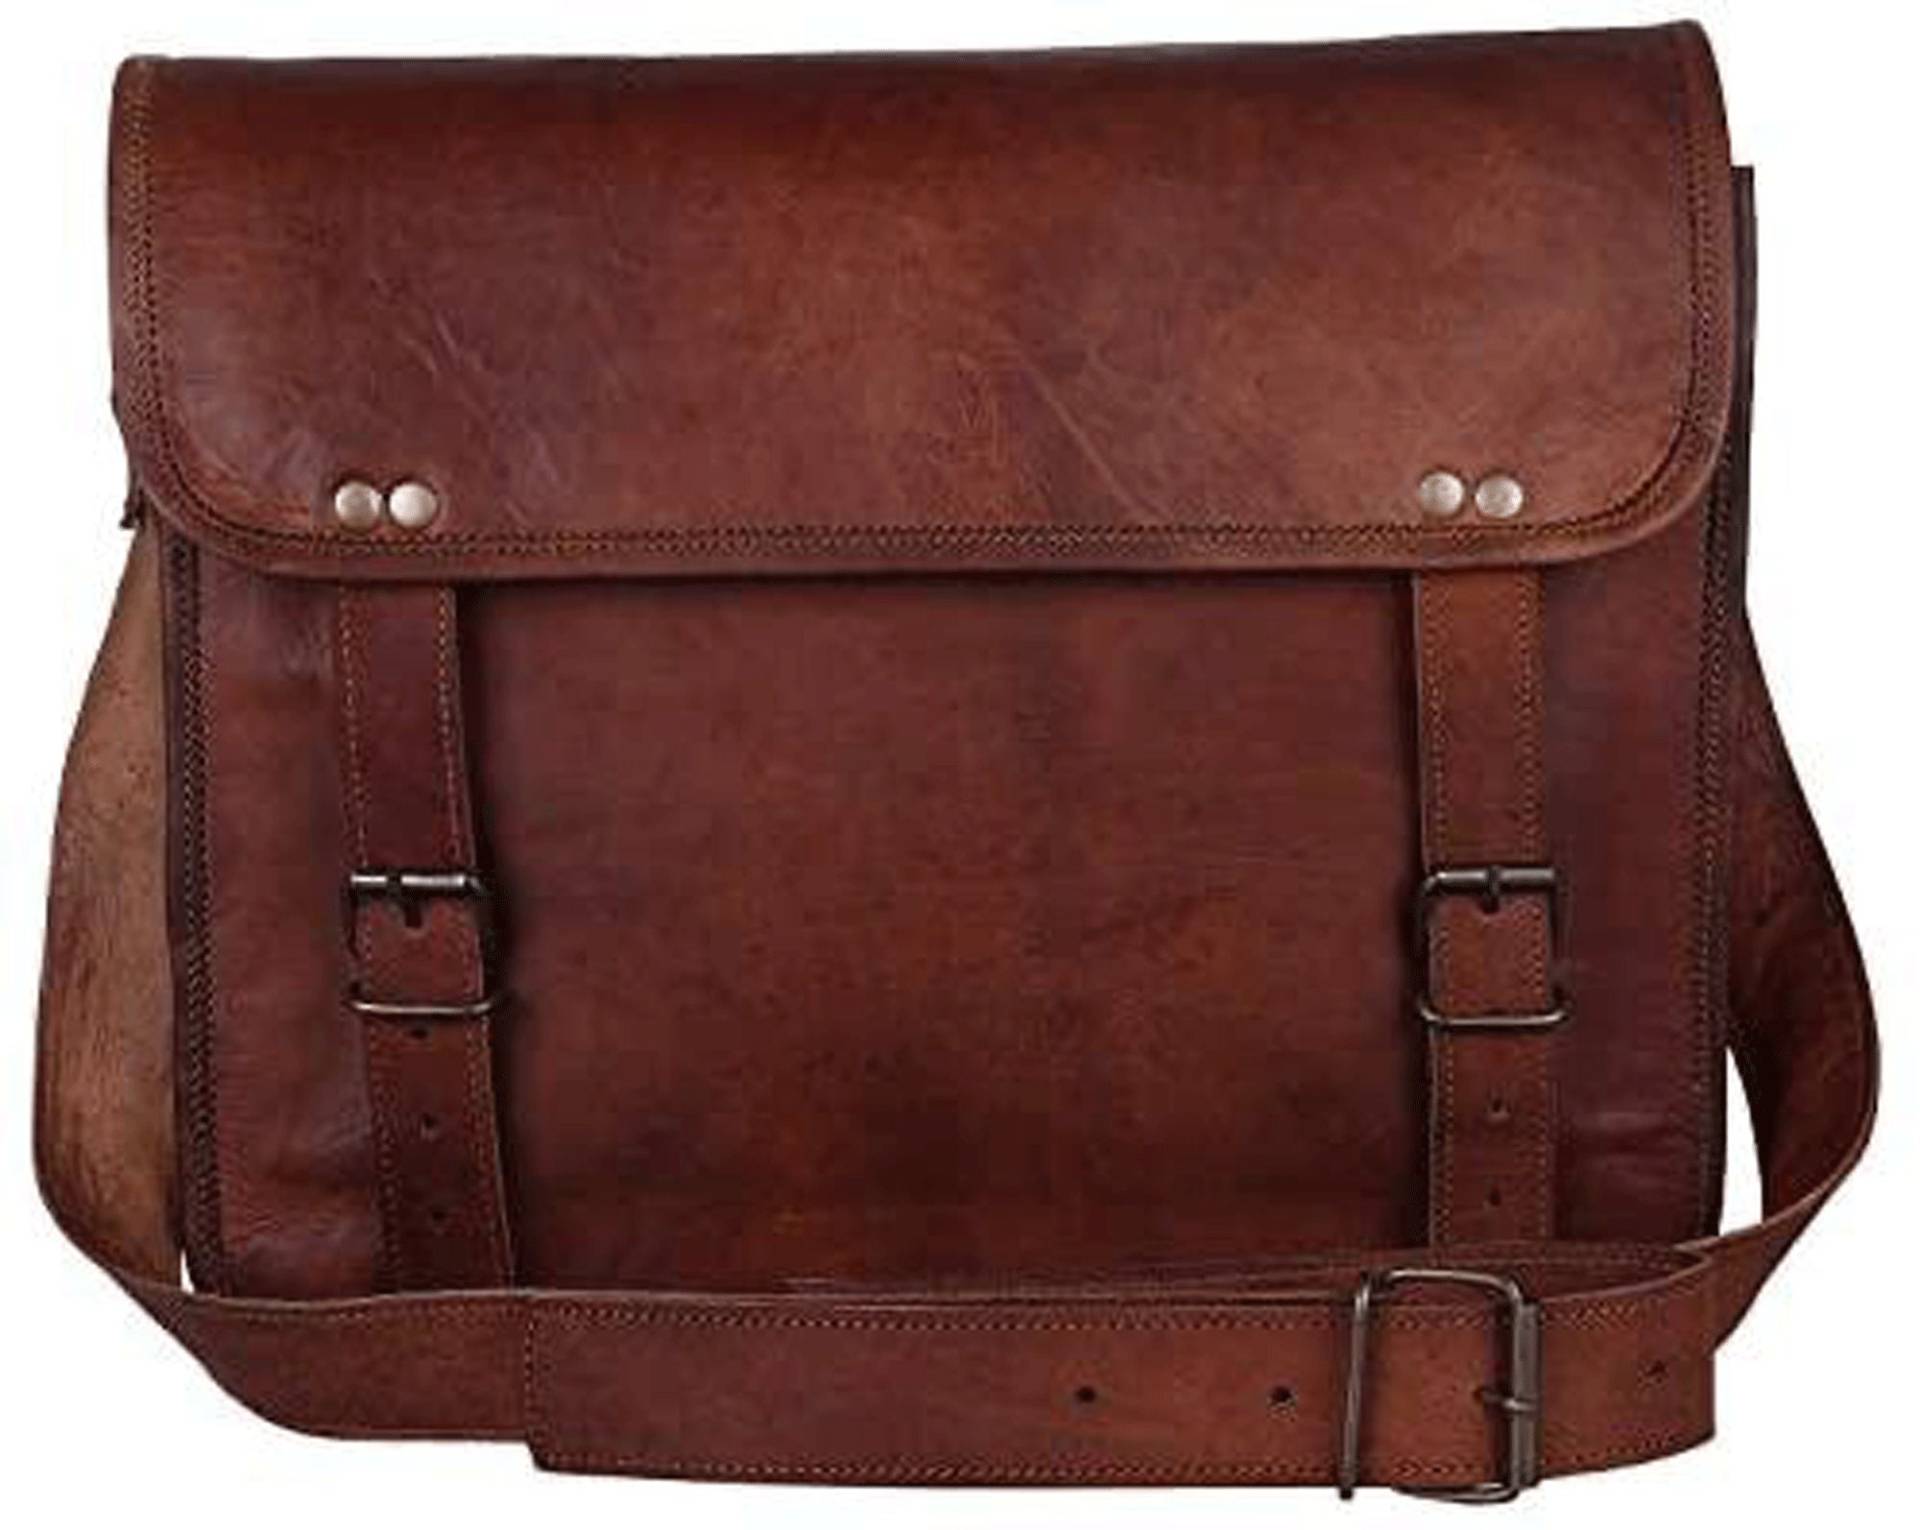 Braune Leder Messenger Tasche Für Männer Frau - Vollnarbenleder Laptoptasche Büro Umhängetasche Aktentasche Schultasche von LeathercreativeArt